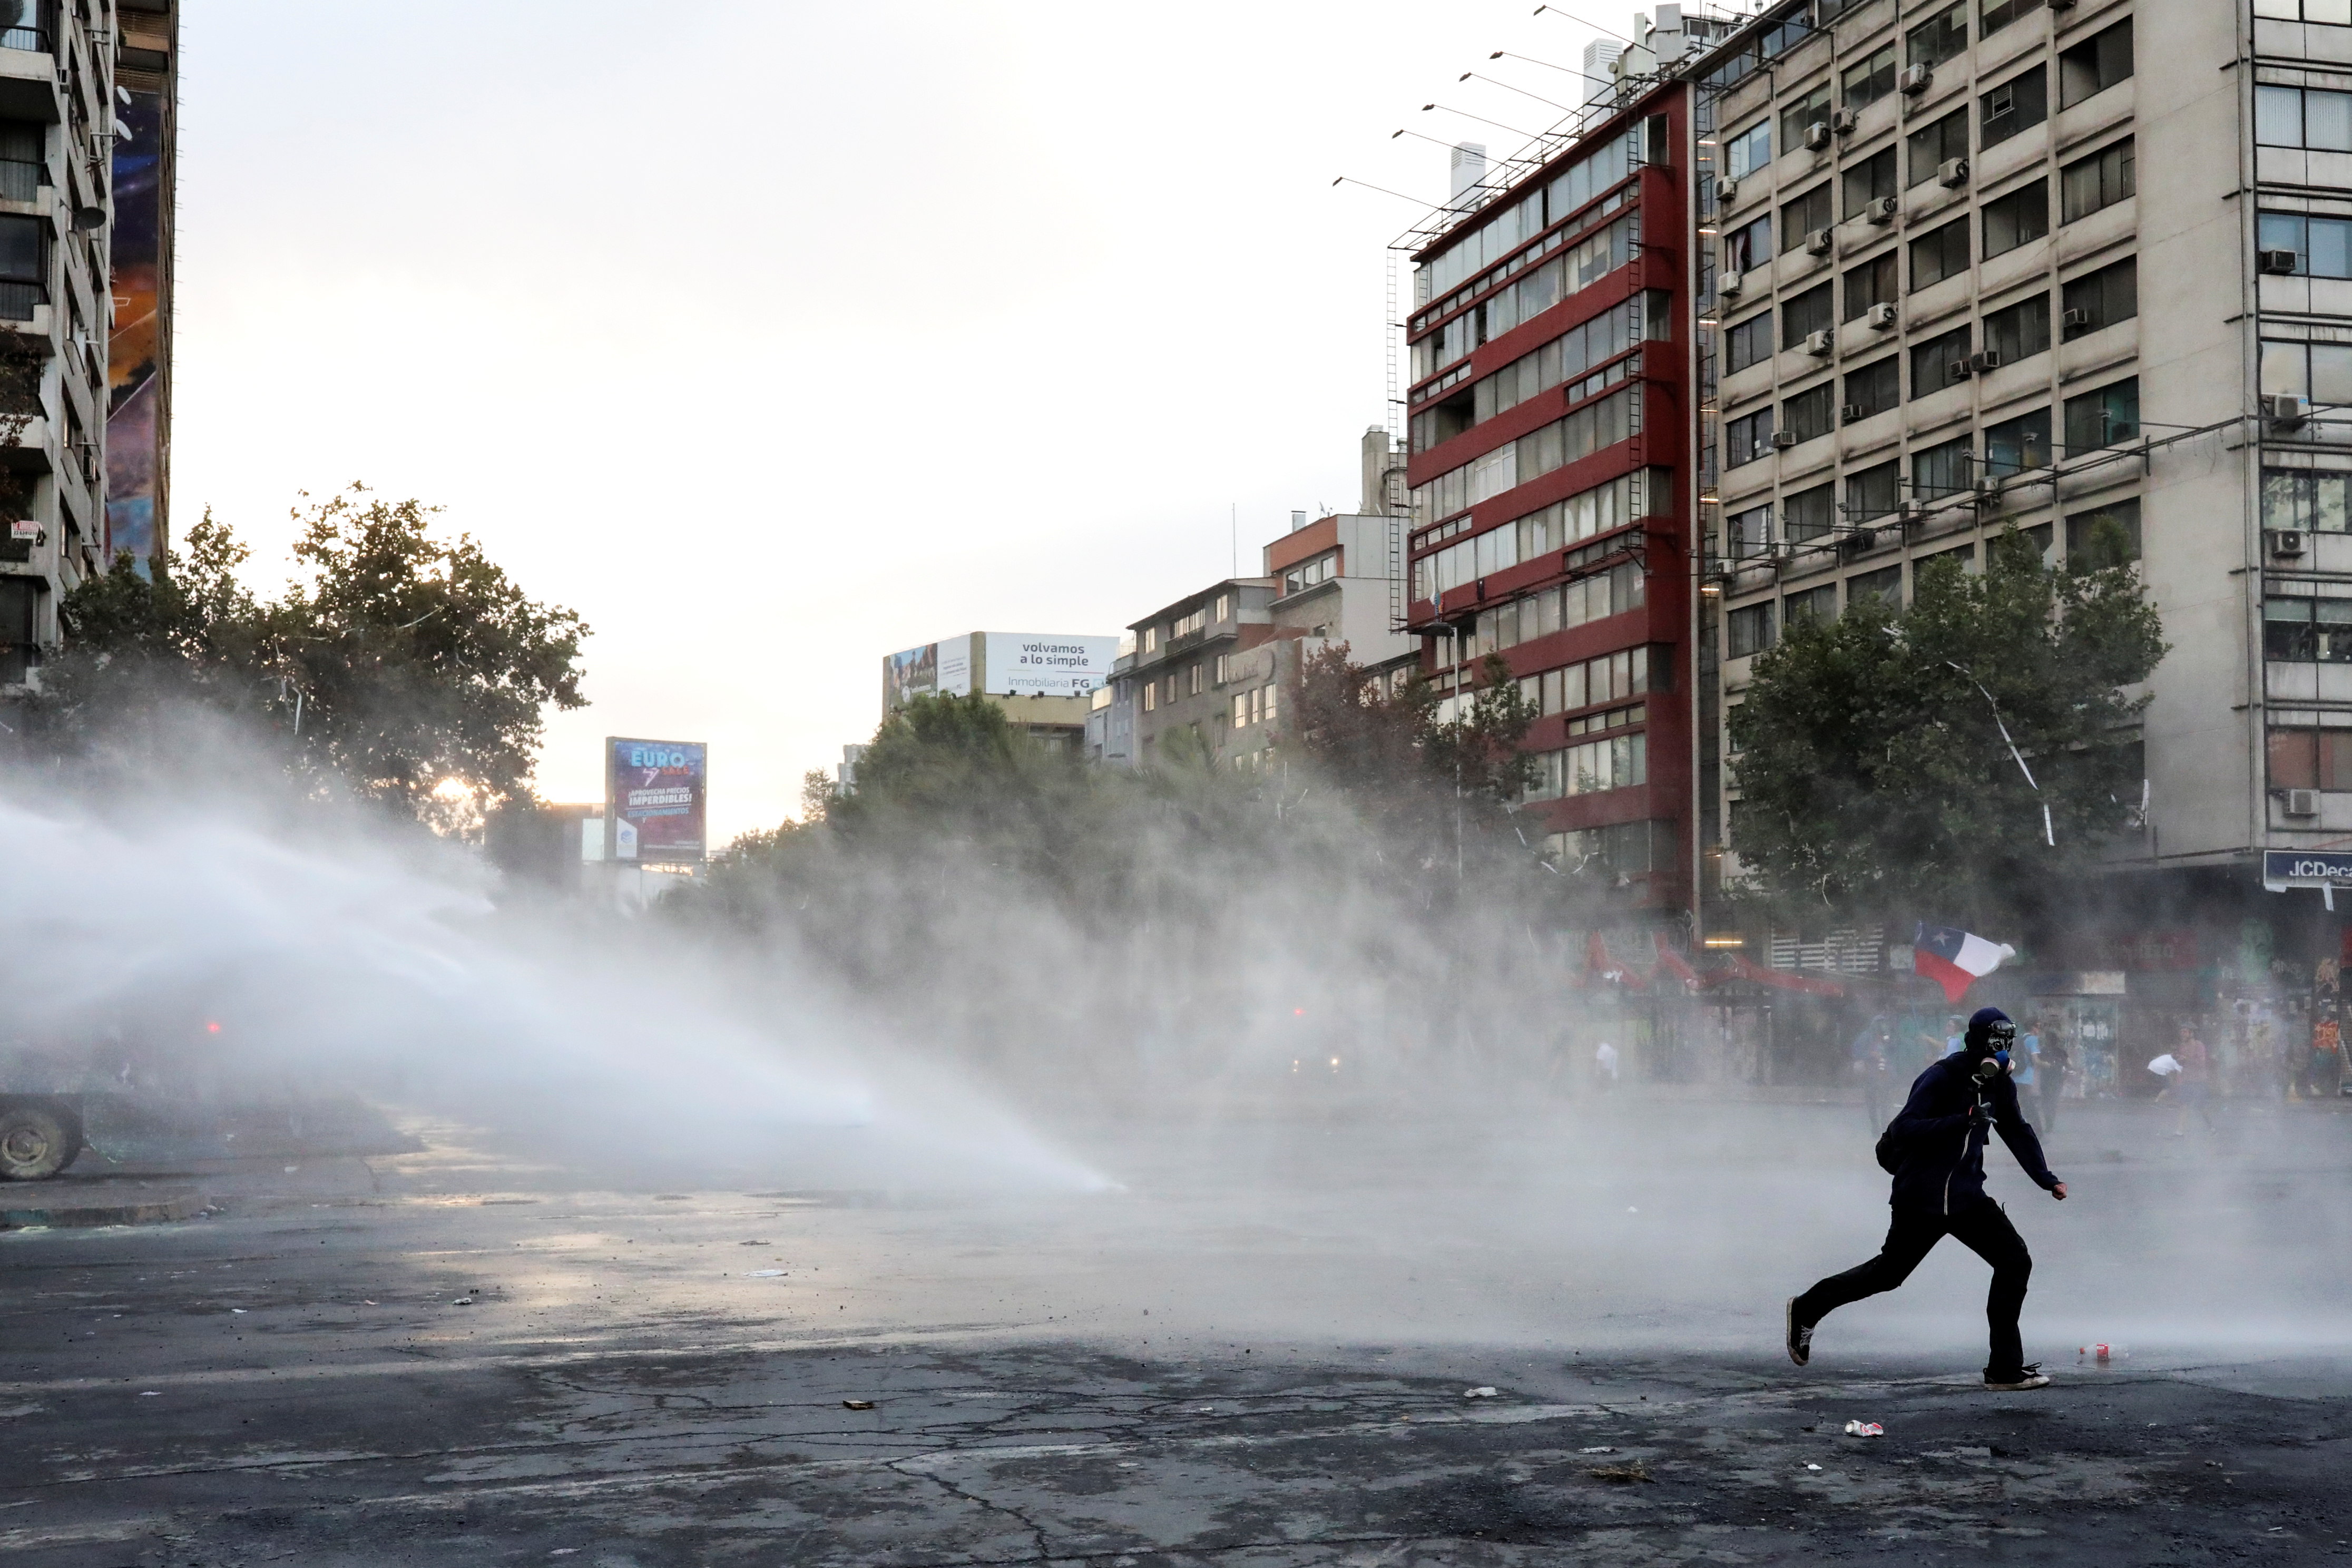 Χιλή: Νέα μέτρα της κυβέρνησης για να αντιμετωπίσει τις μαζικές διαδηλώσεις